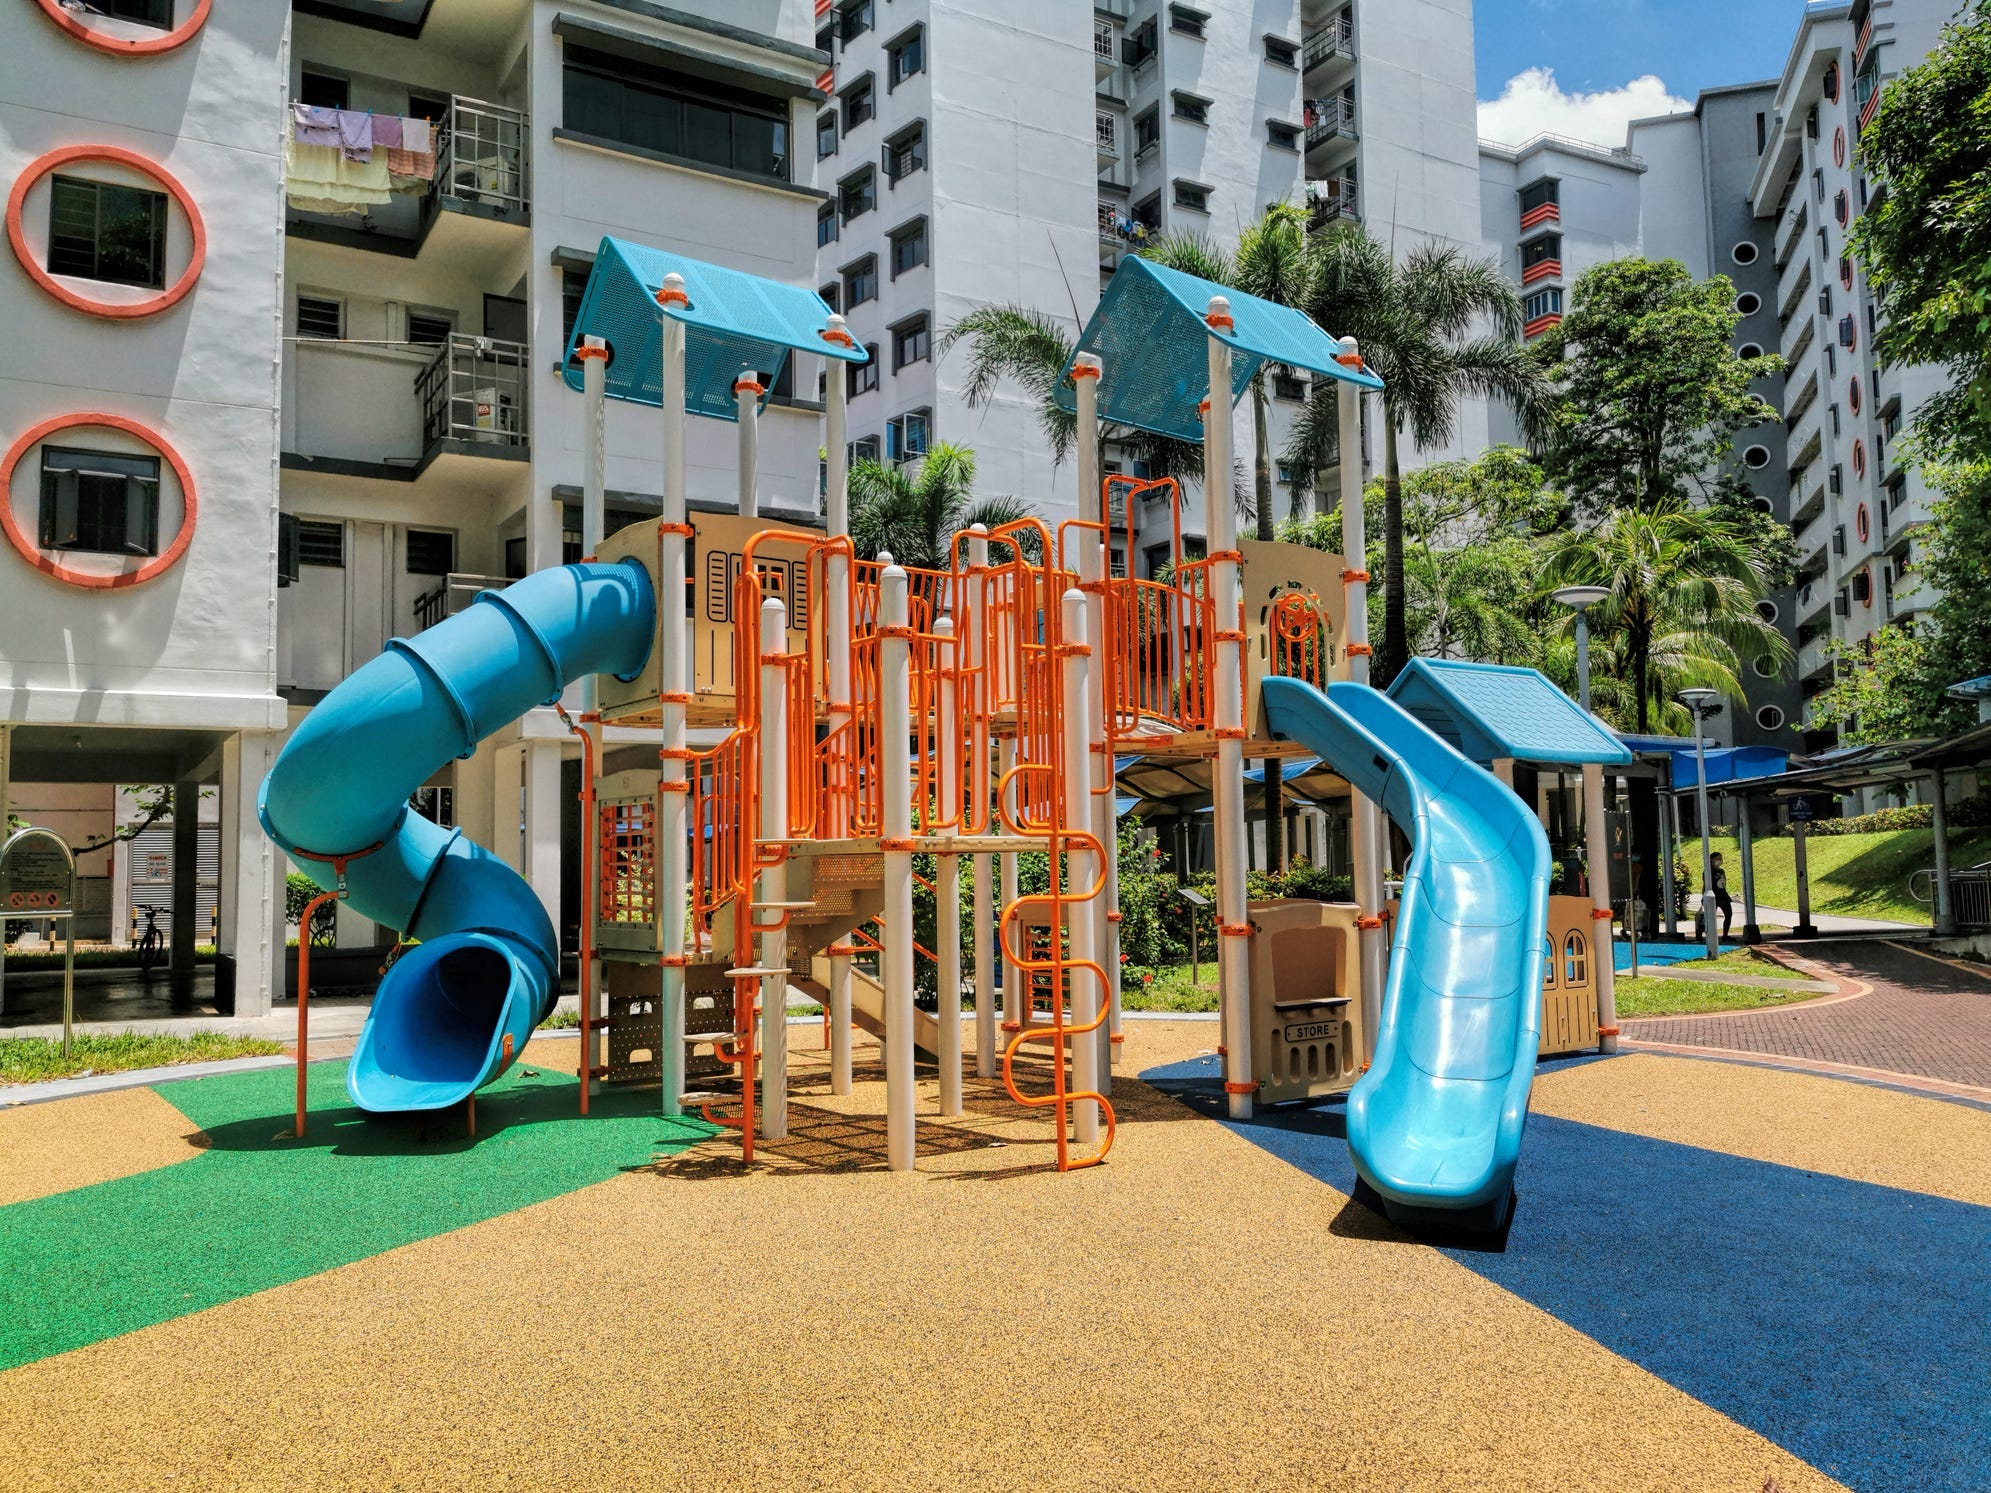 Bunter Spielplatz für Kinder in einer öffentlichen Wohnsiedlung in Singapur.